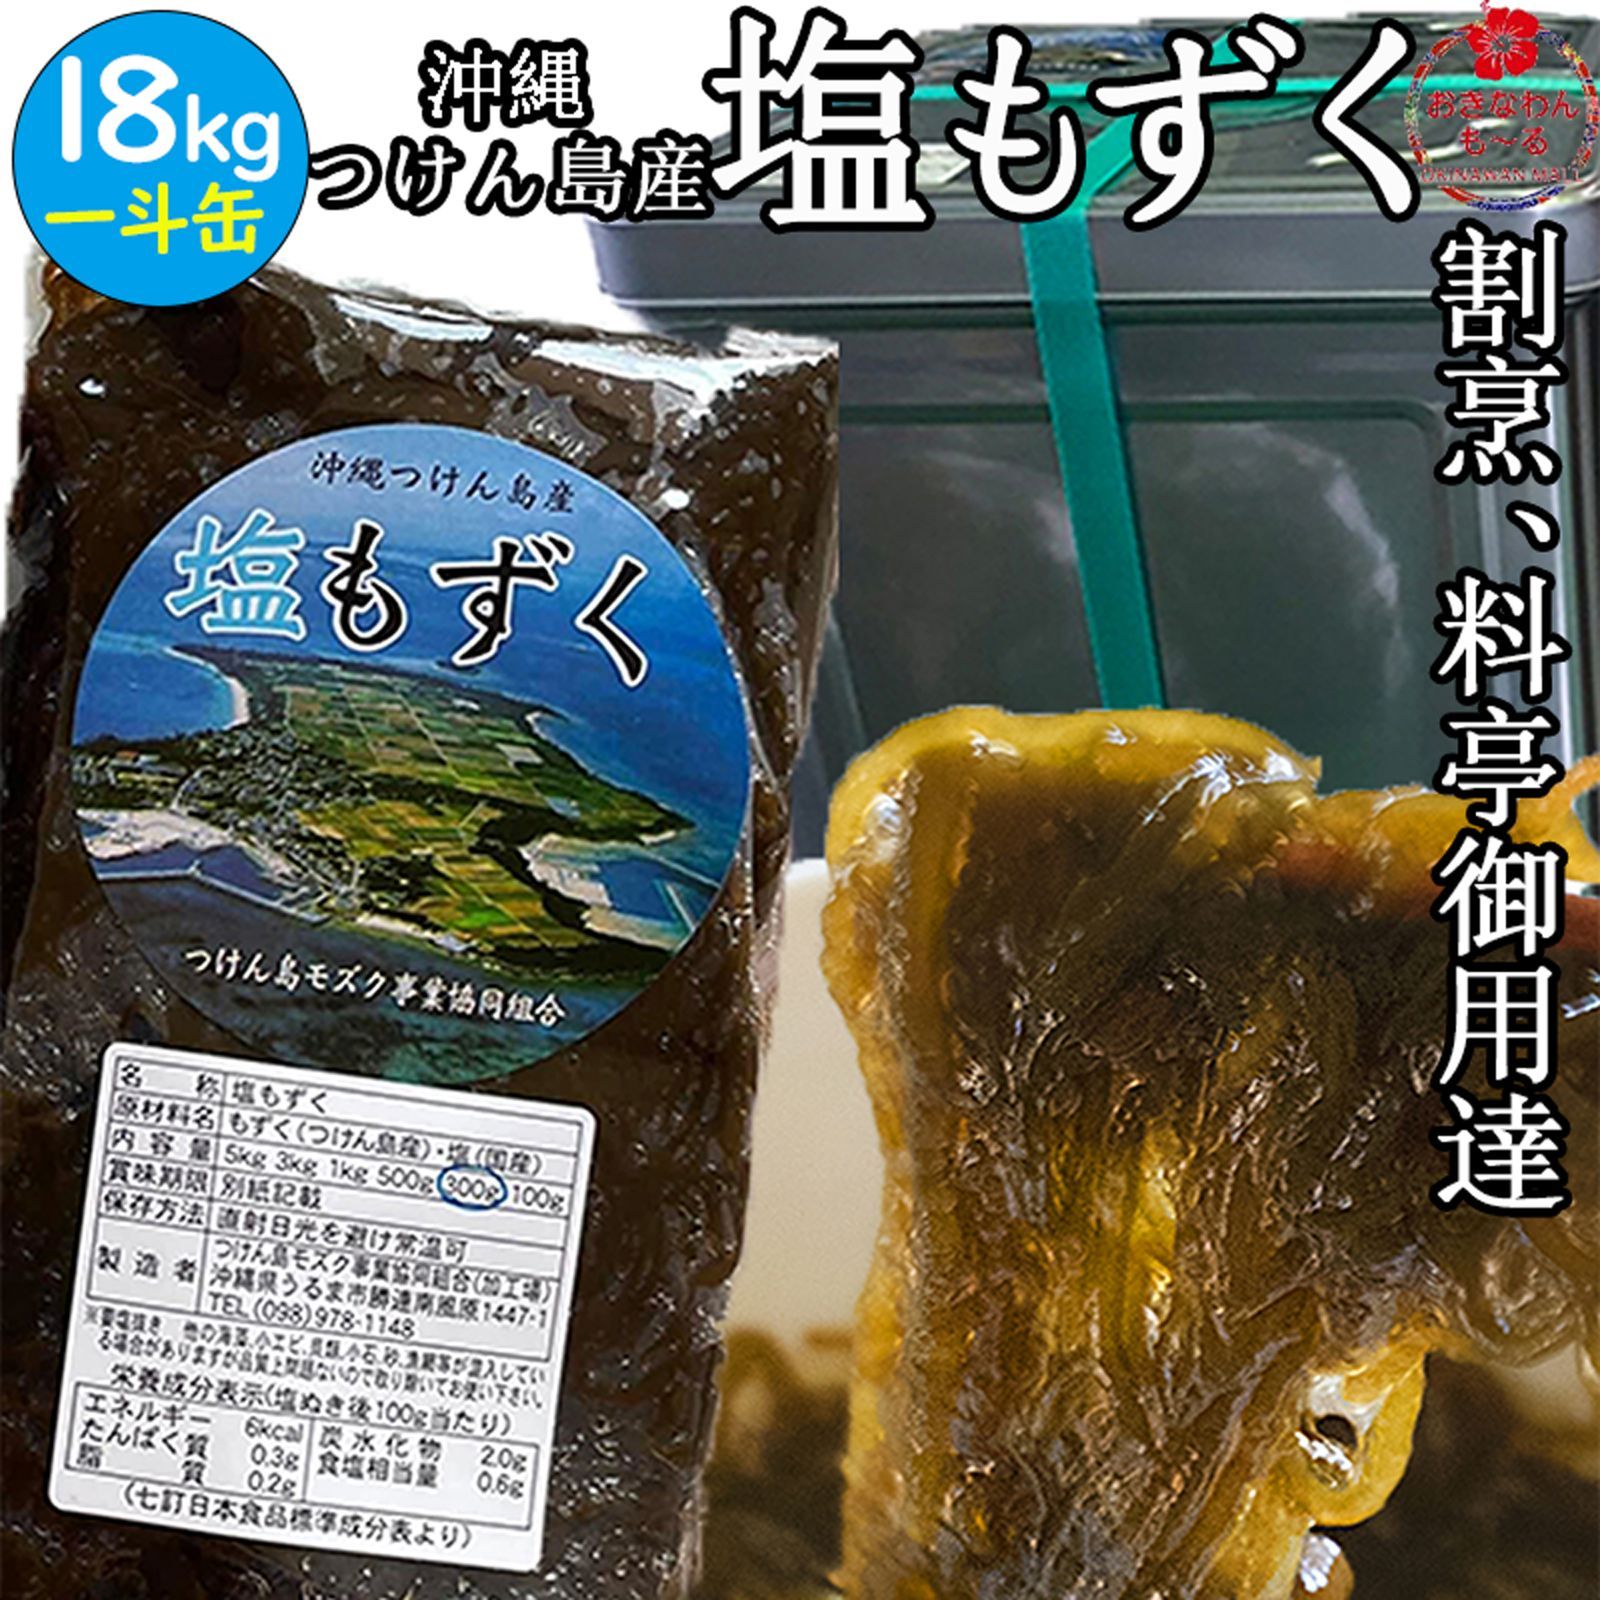 ハウス食品 料亭 柚子塩（28g）×10個 - ポンパレモール